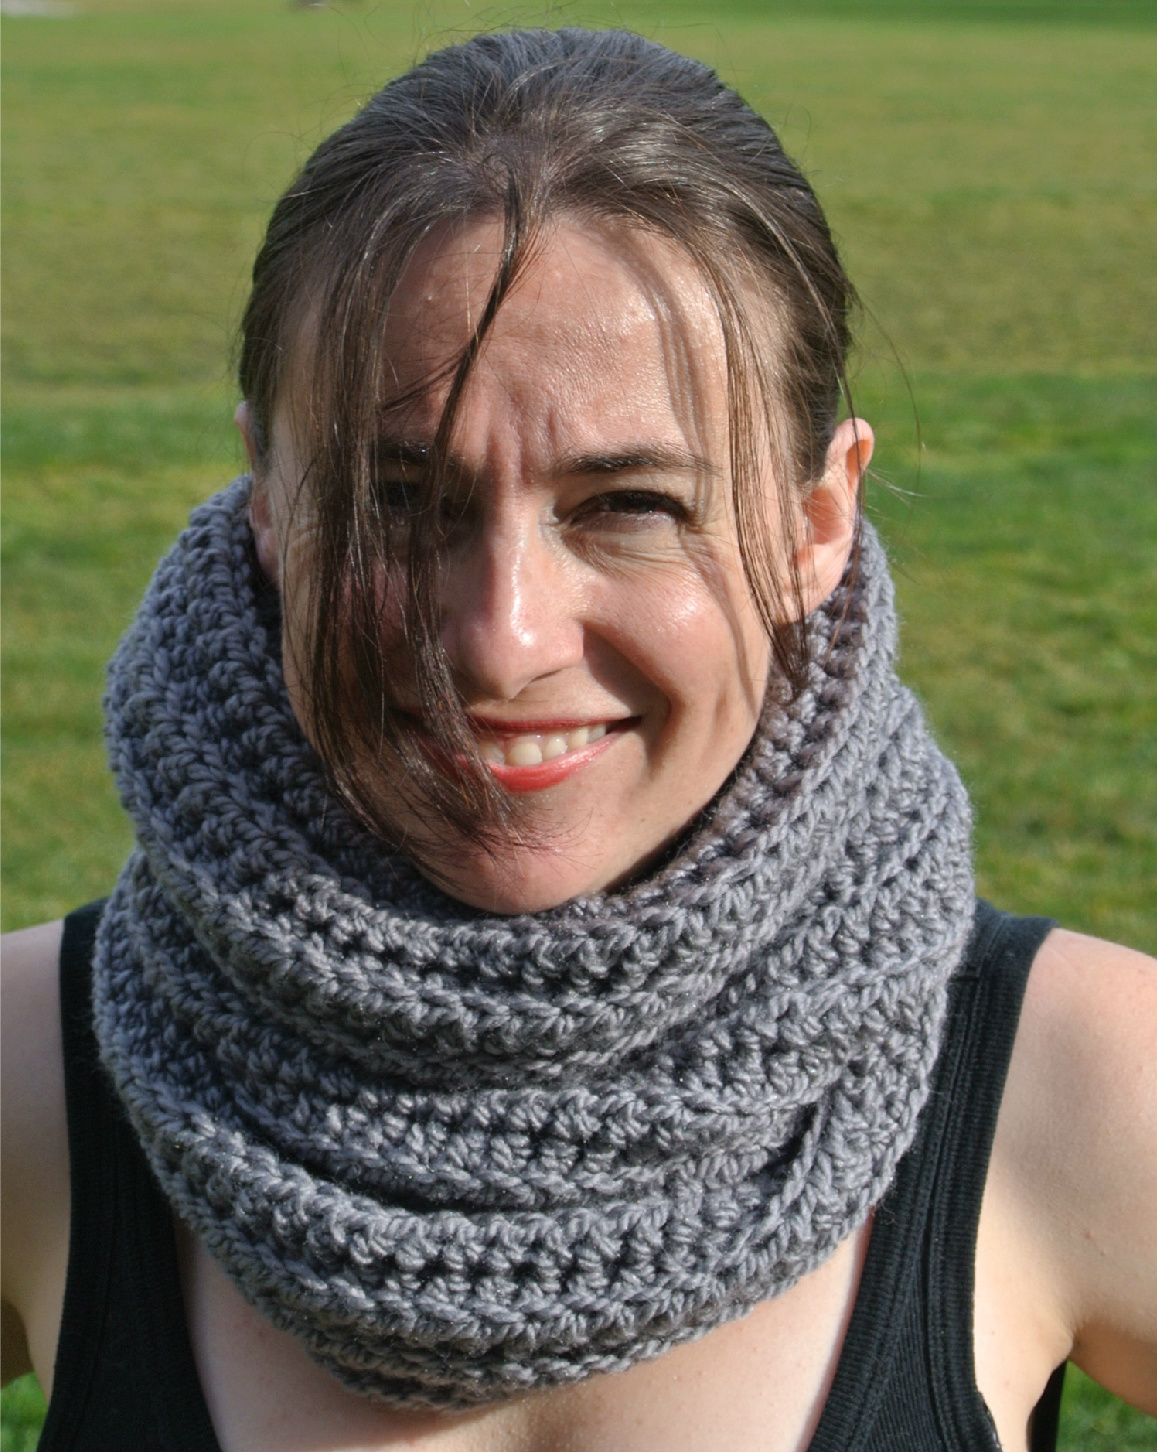 Author Kathryn Vercillo